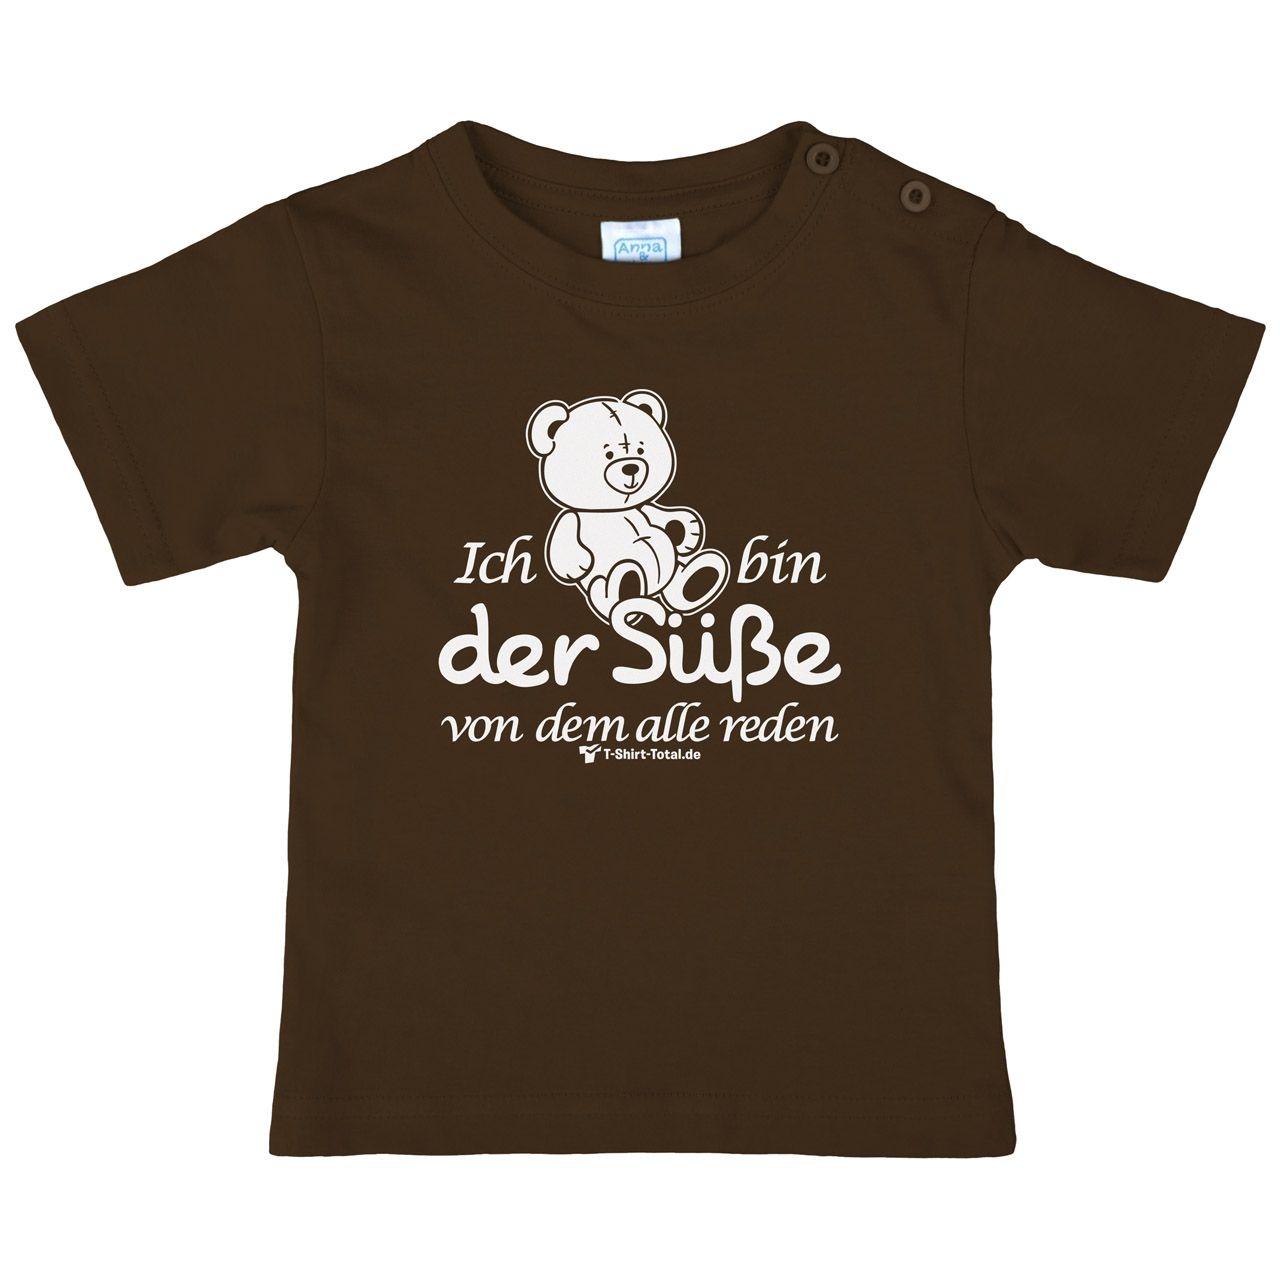 Der Süße Kinder T-Shirt braun 56 / 62